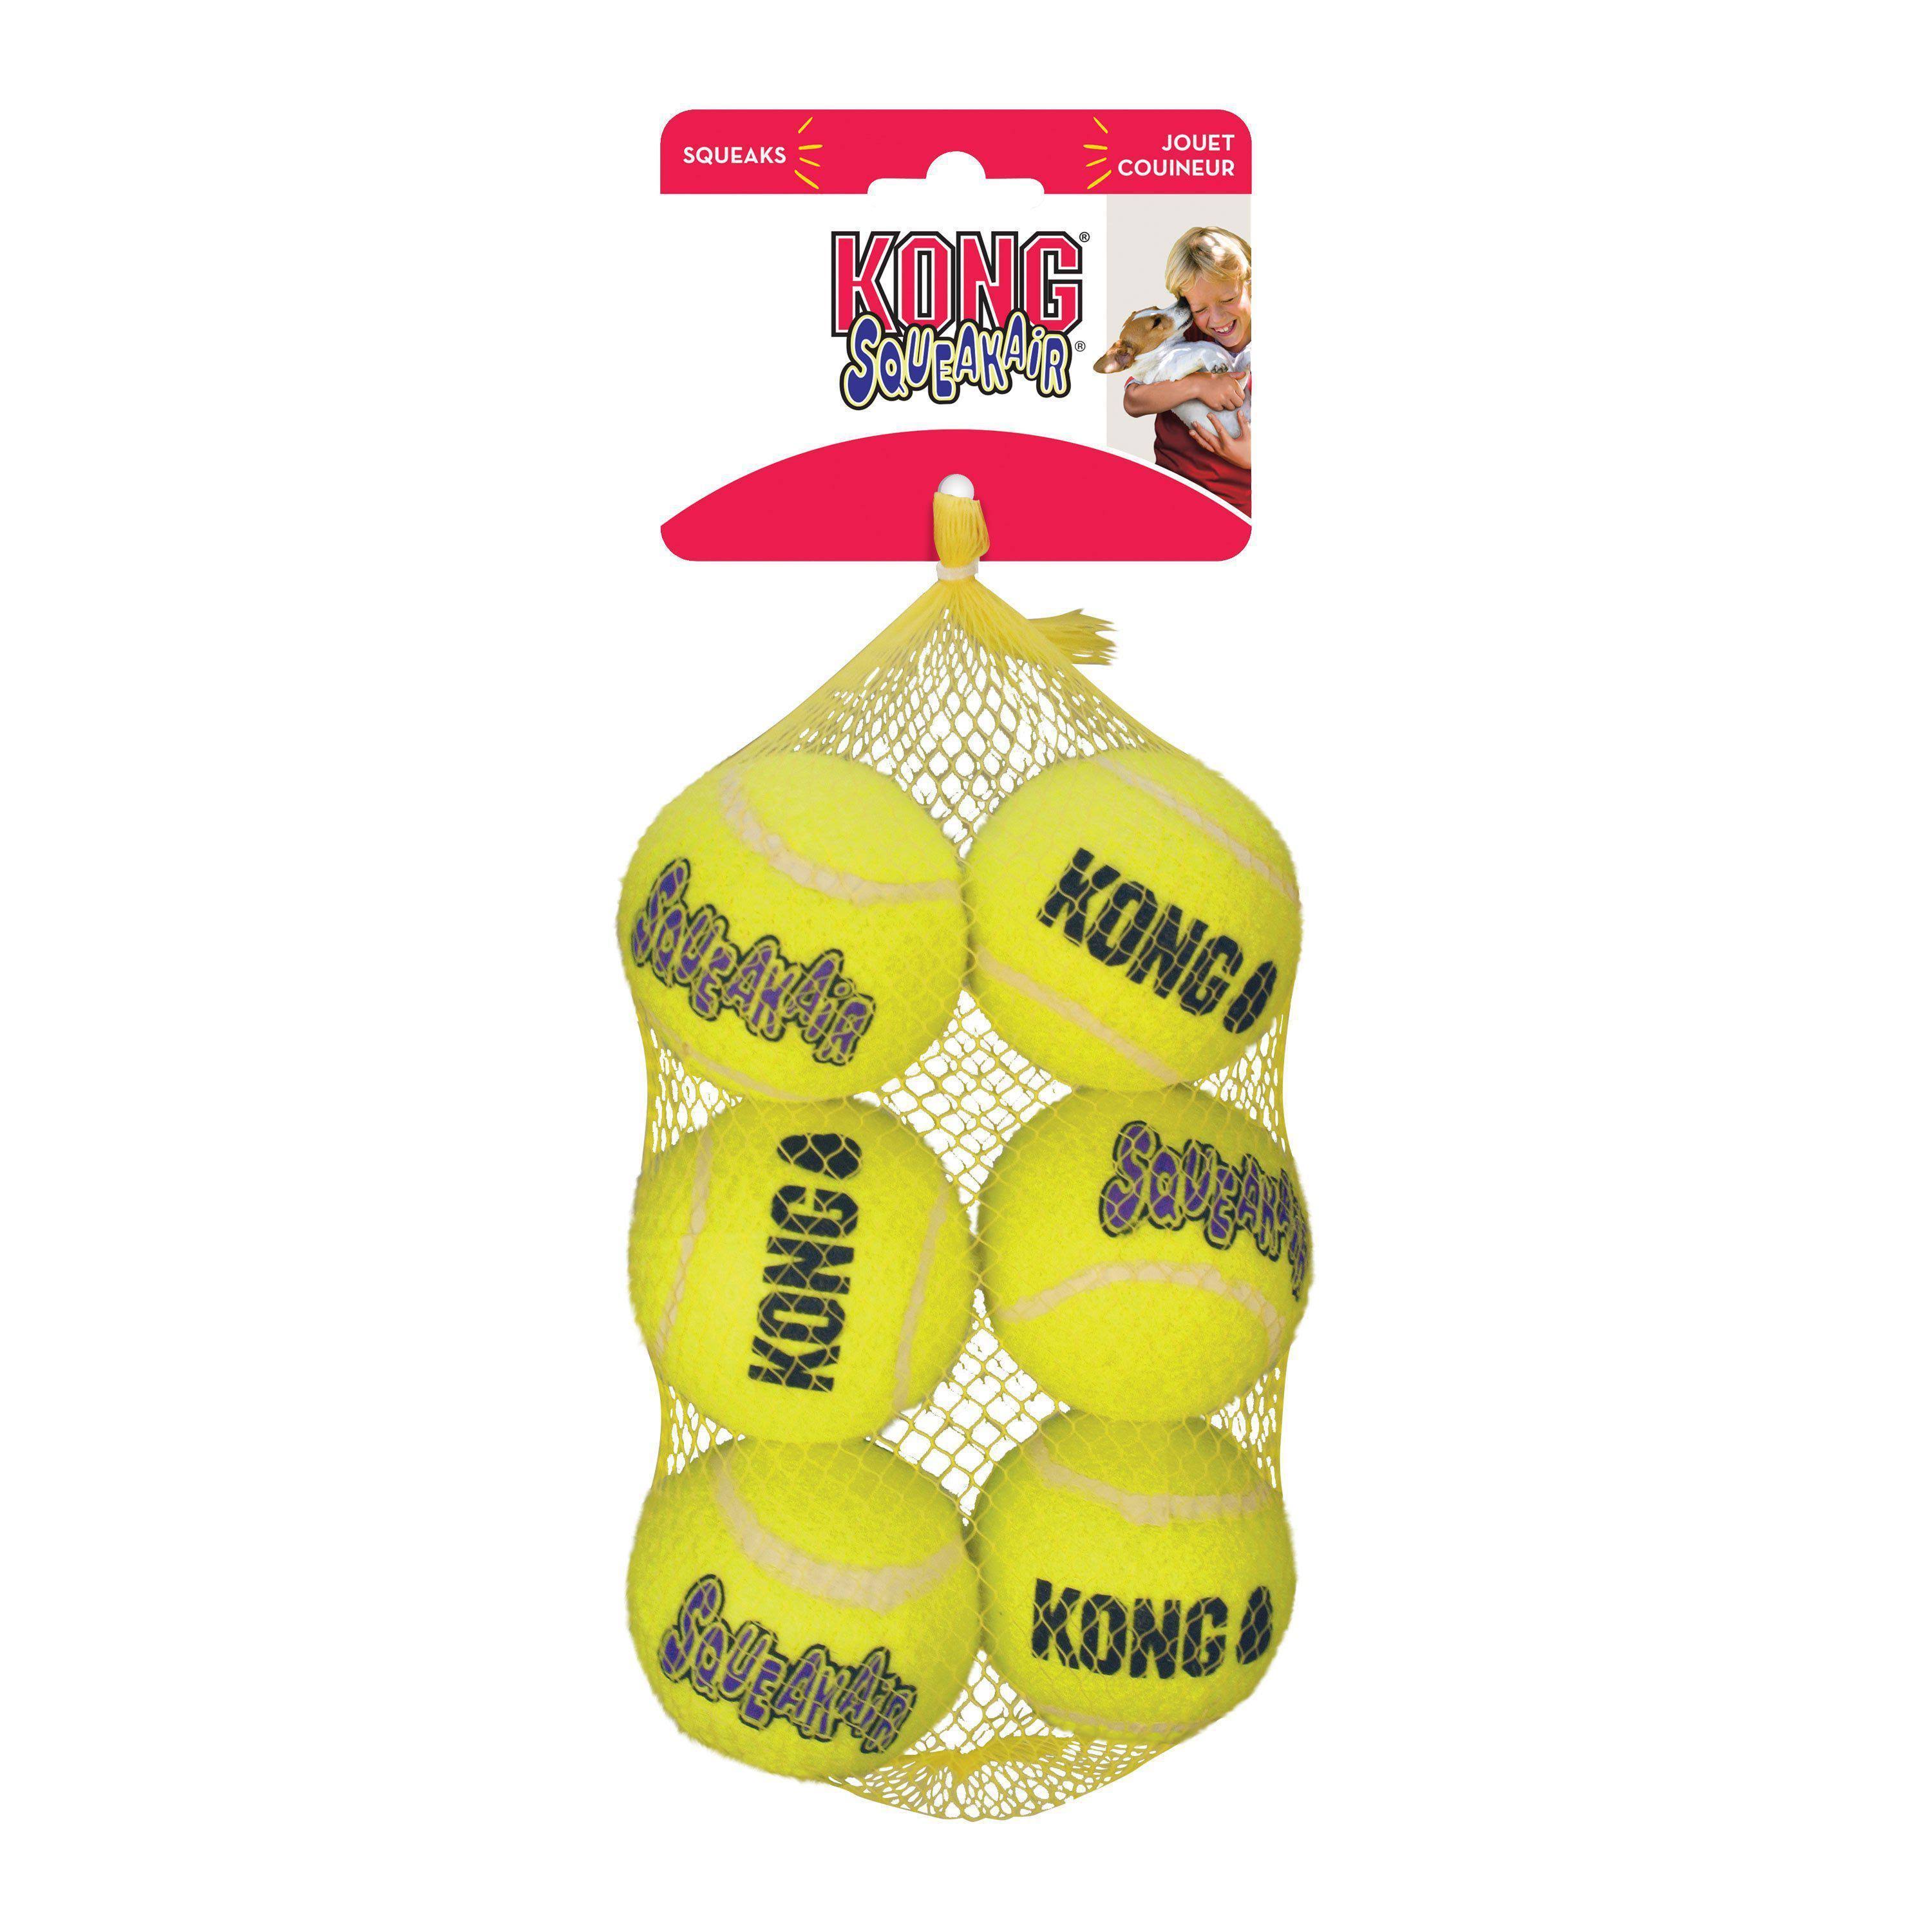 Kong Squeakair Balls 6-Pack (Medium)